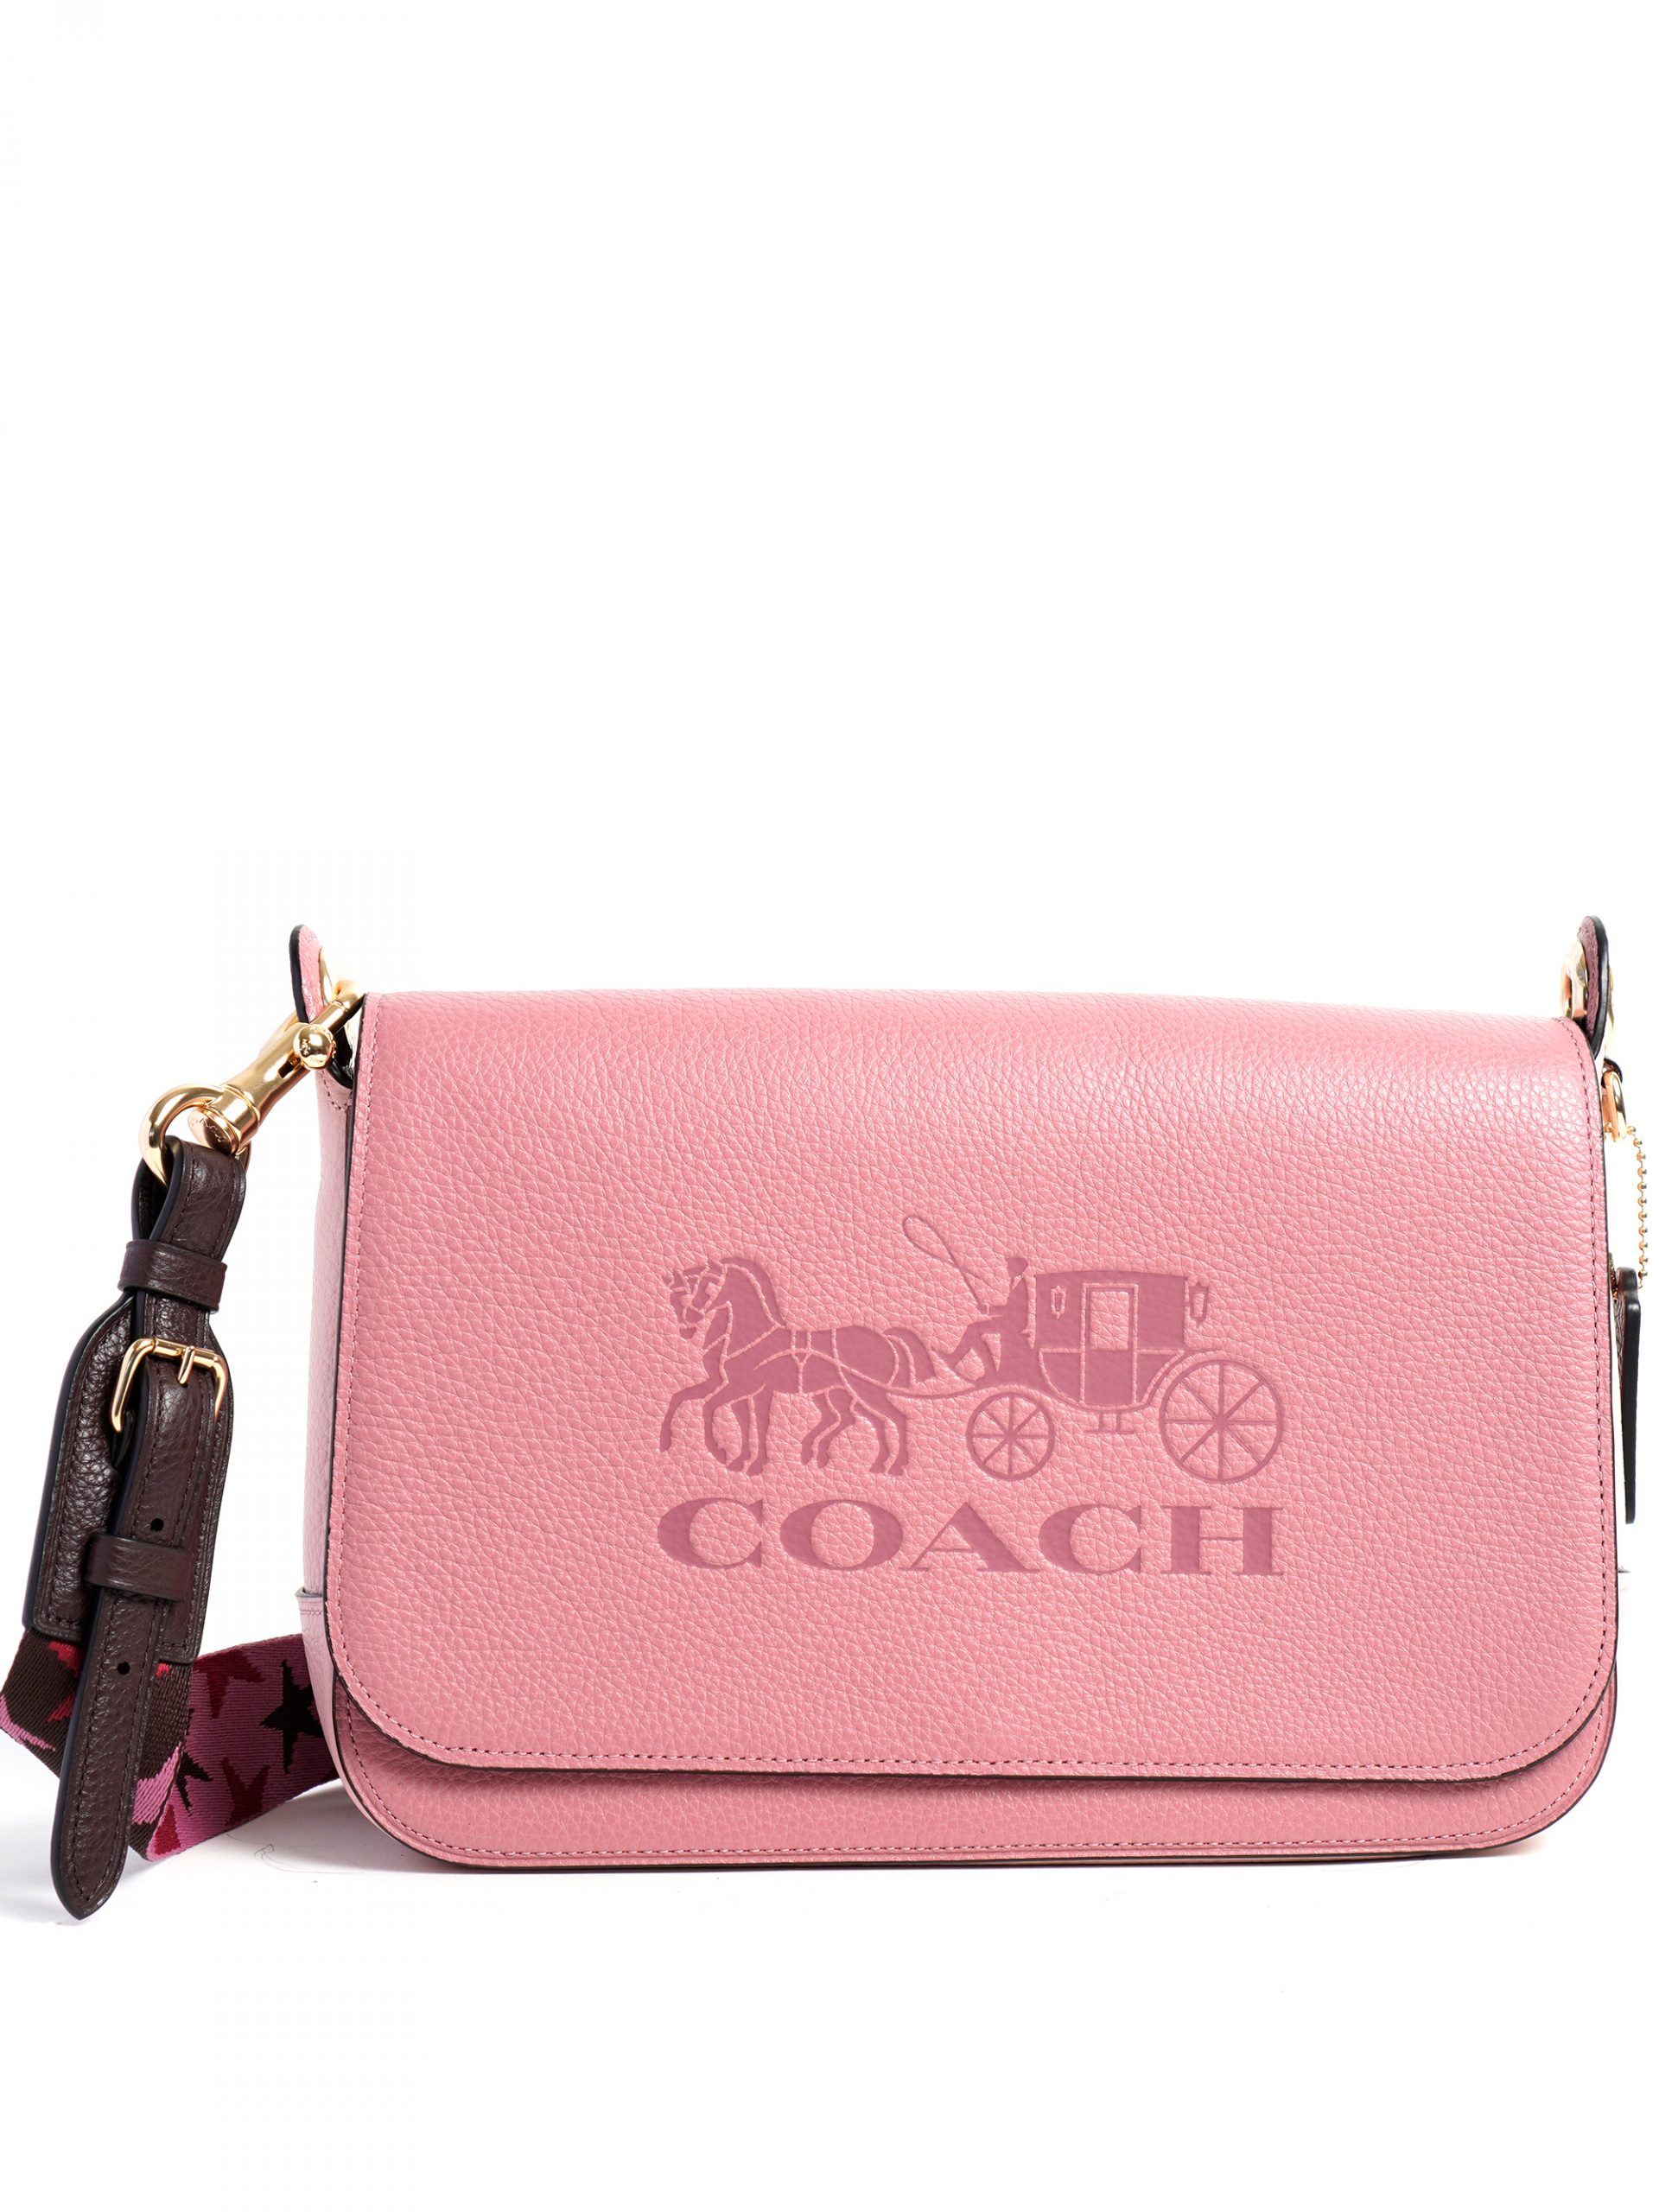 Coach Jes Messenger Colorblock Bag